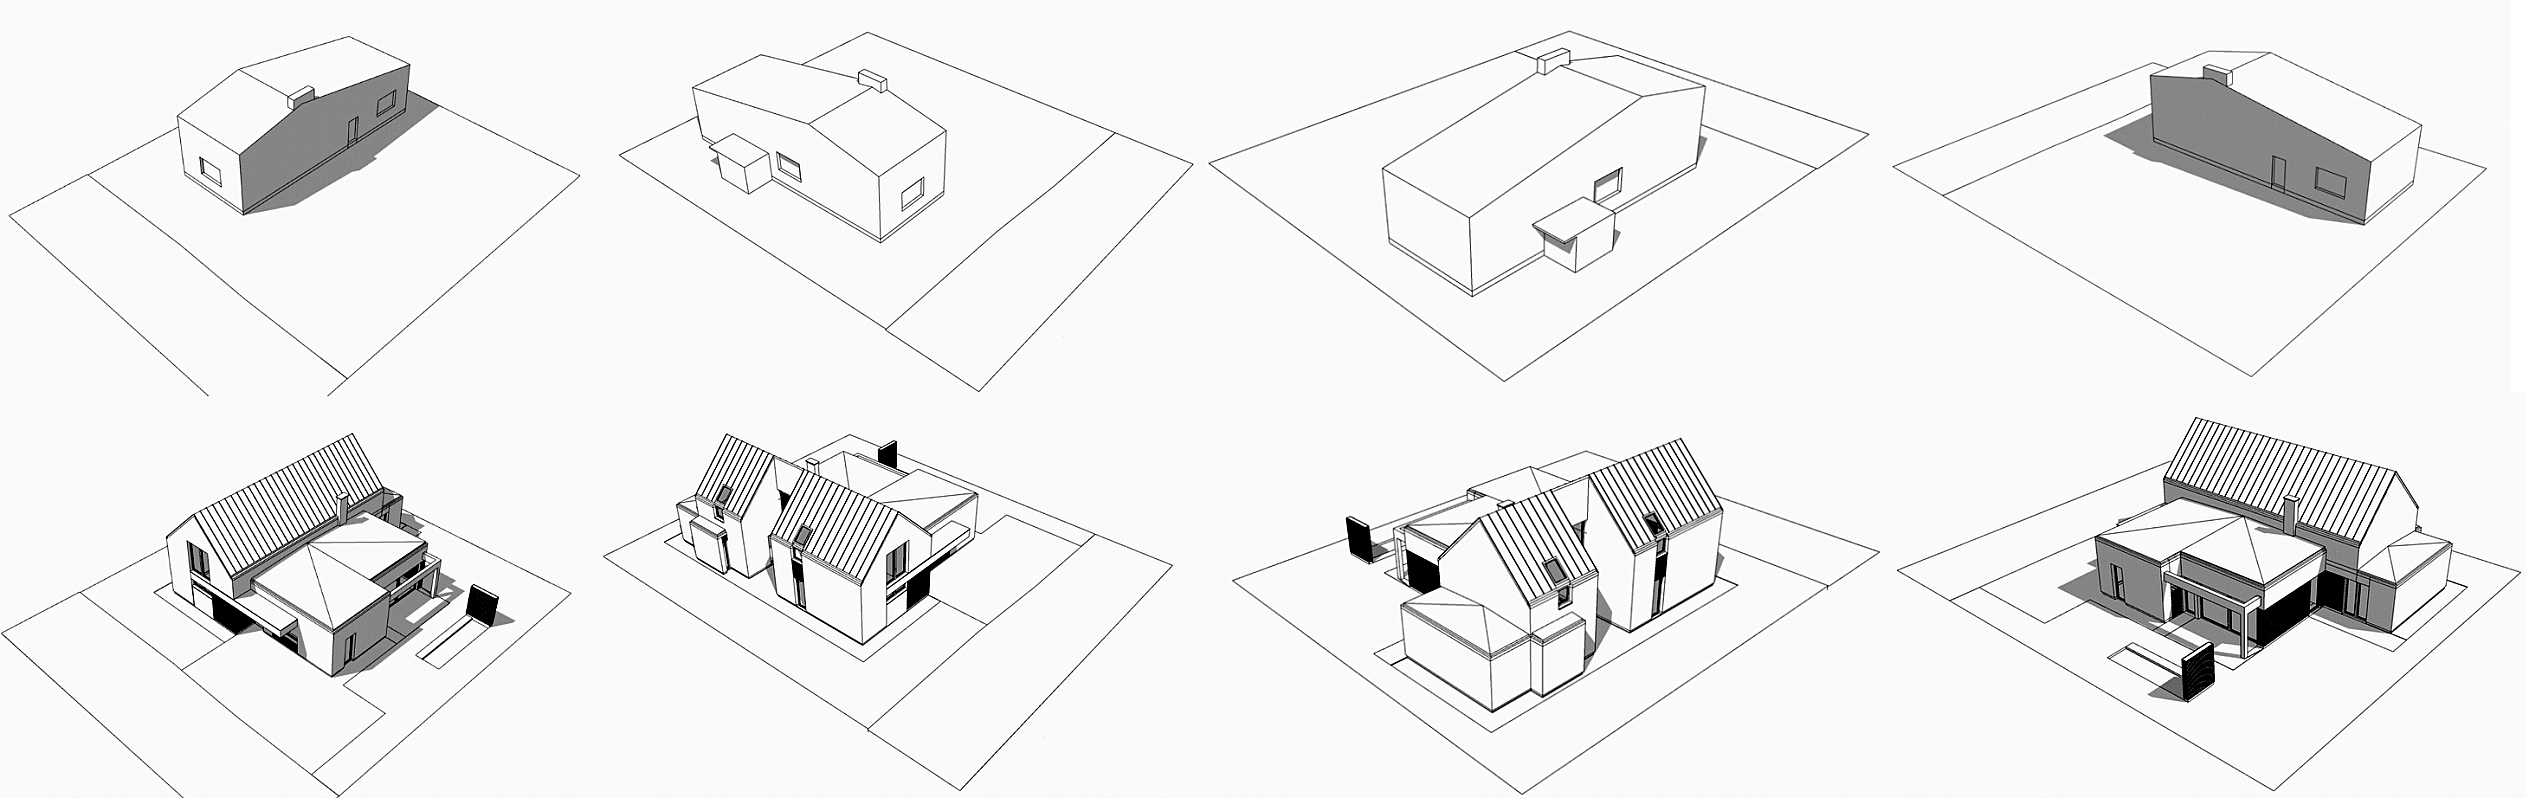 rozbudowa domu częstochowa schemat – awx2 architekci częstochowa